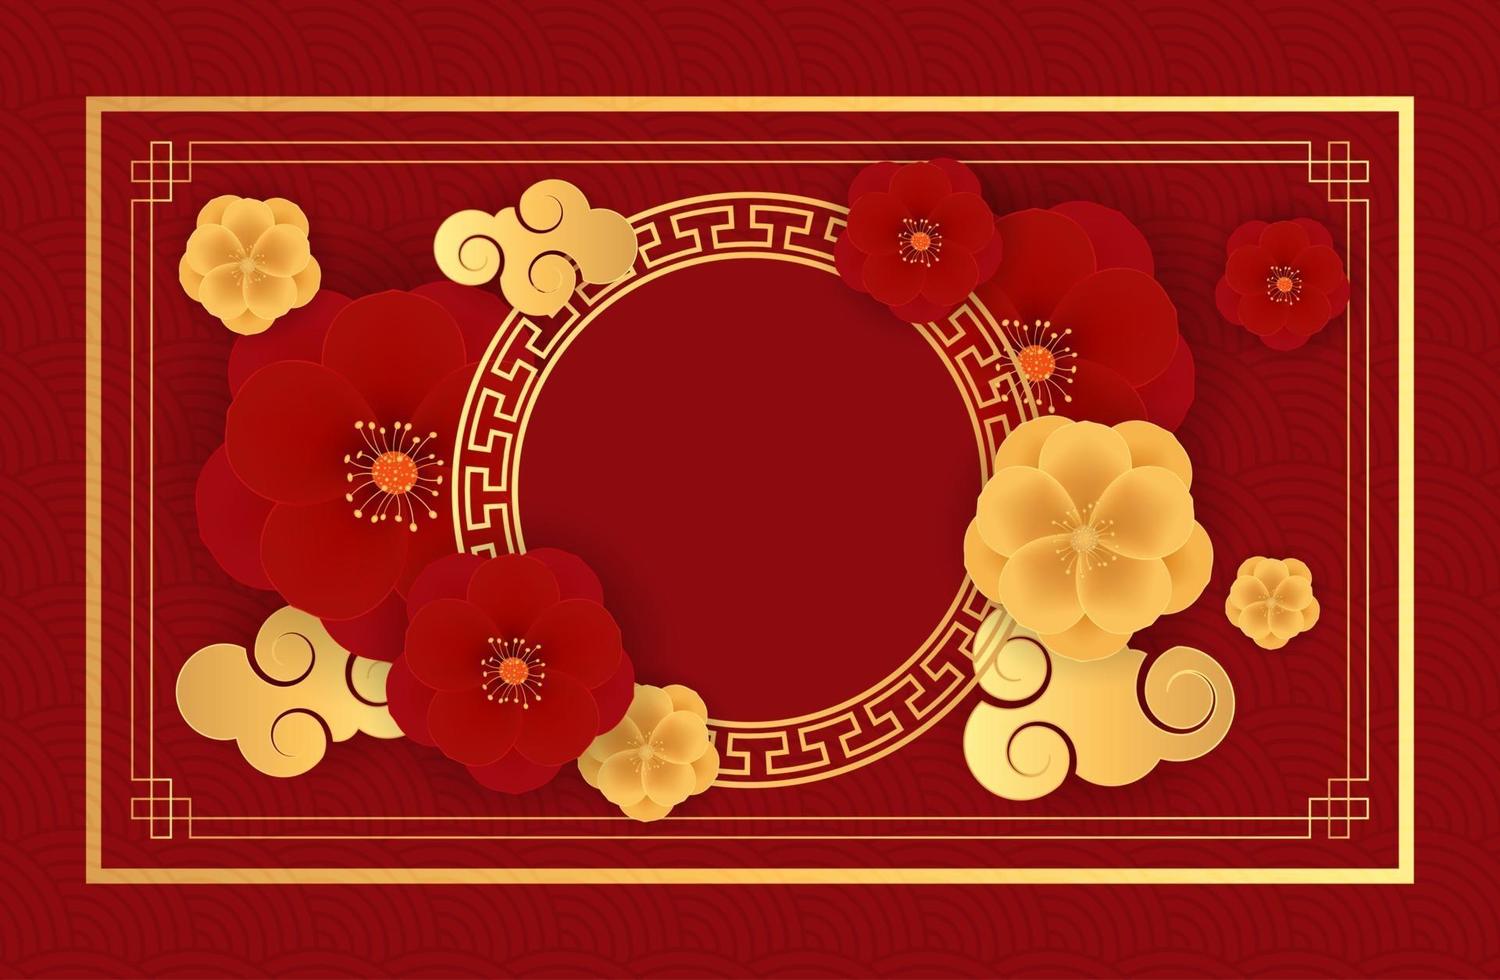 abstrait de vacances chinoises avec des lanternes suspendues et des fleurs de prunier. illustration vectorielle eps10 vecteur